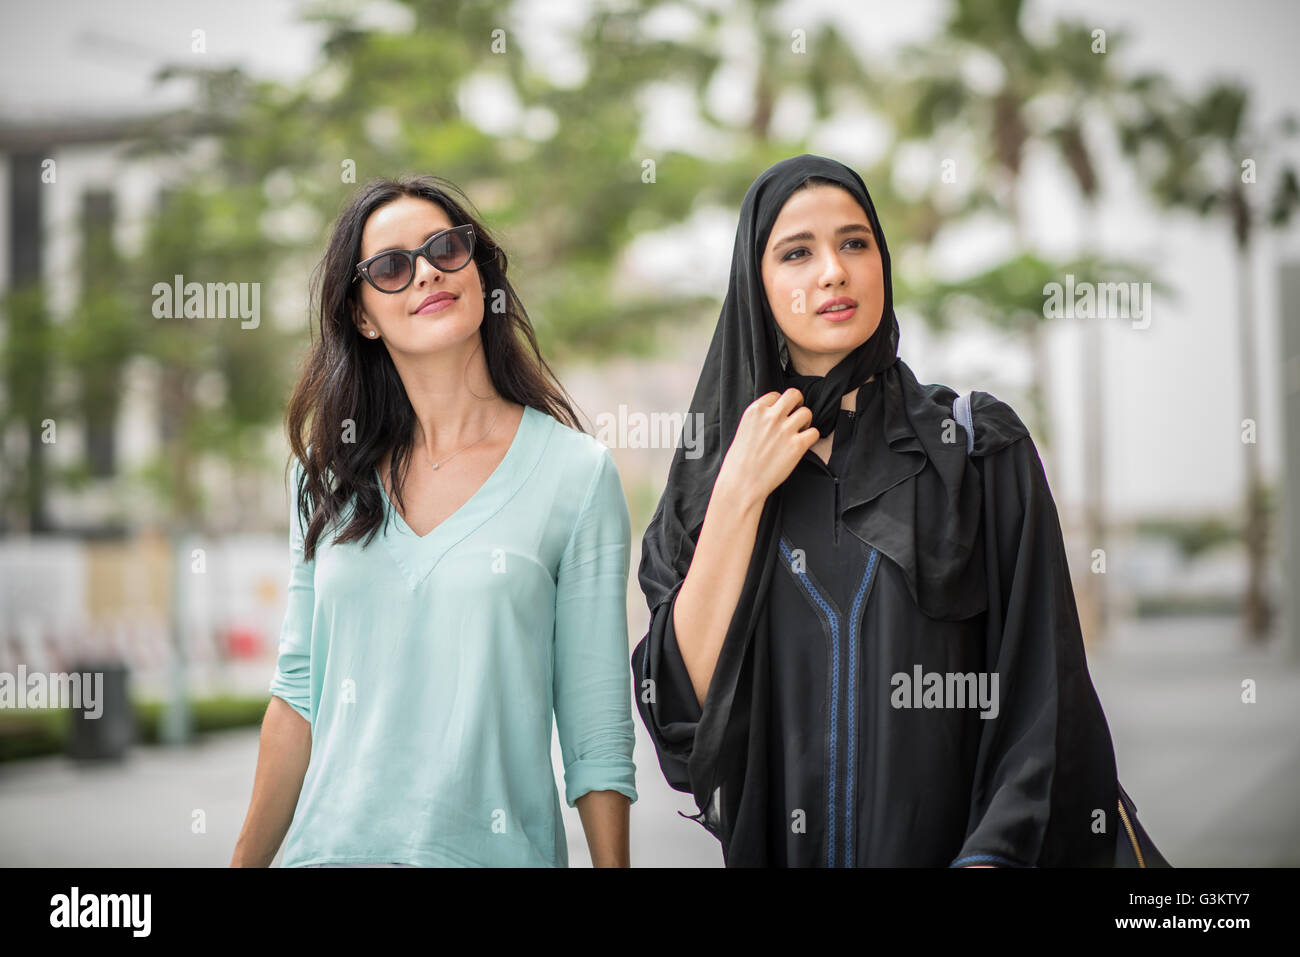 Junge Naher Osten Frau trägt traditionelle Kleidung zu Fuß entlang der Straße mit Freundin, Dubai, Vereinigte Arabische Emirate Stockfoto